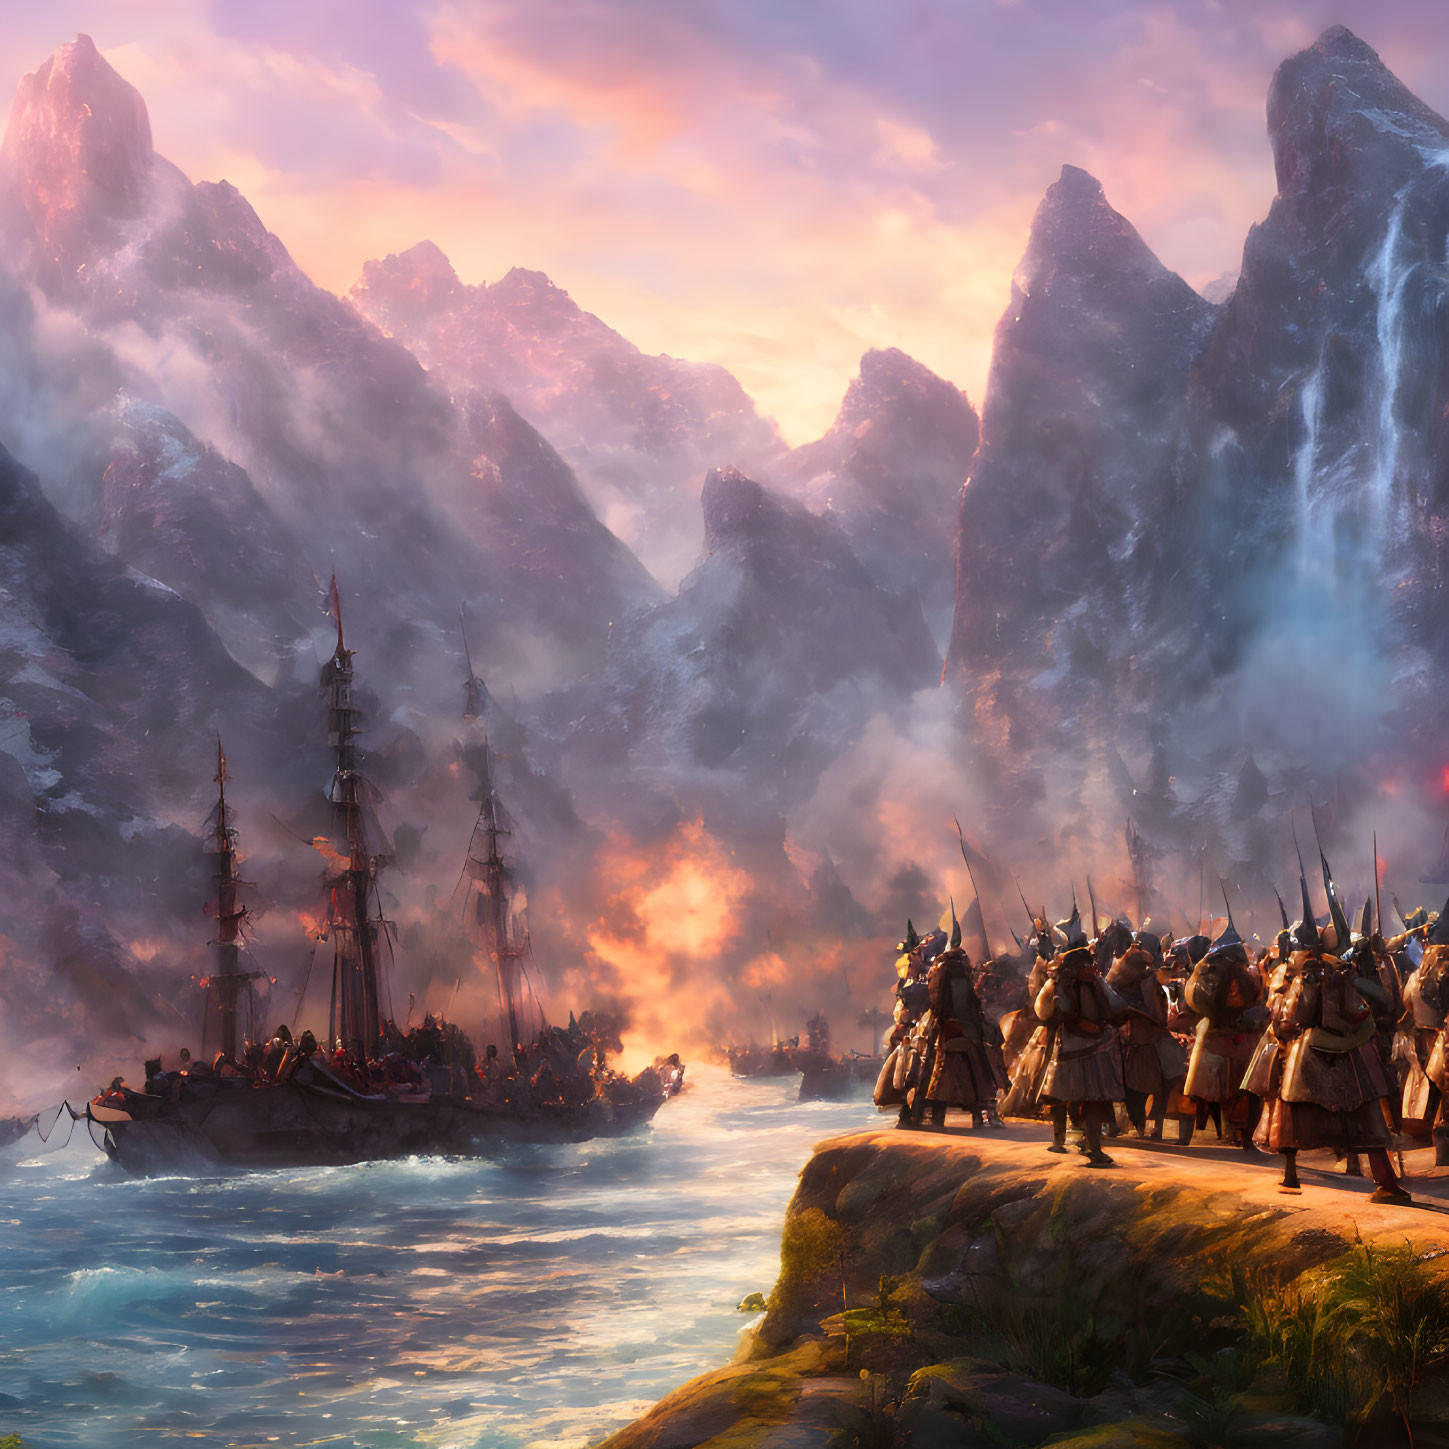 Viking ships on rugged coastline at sunset